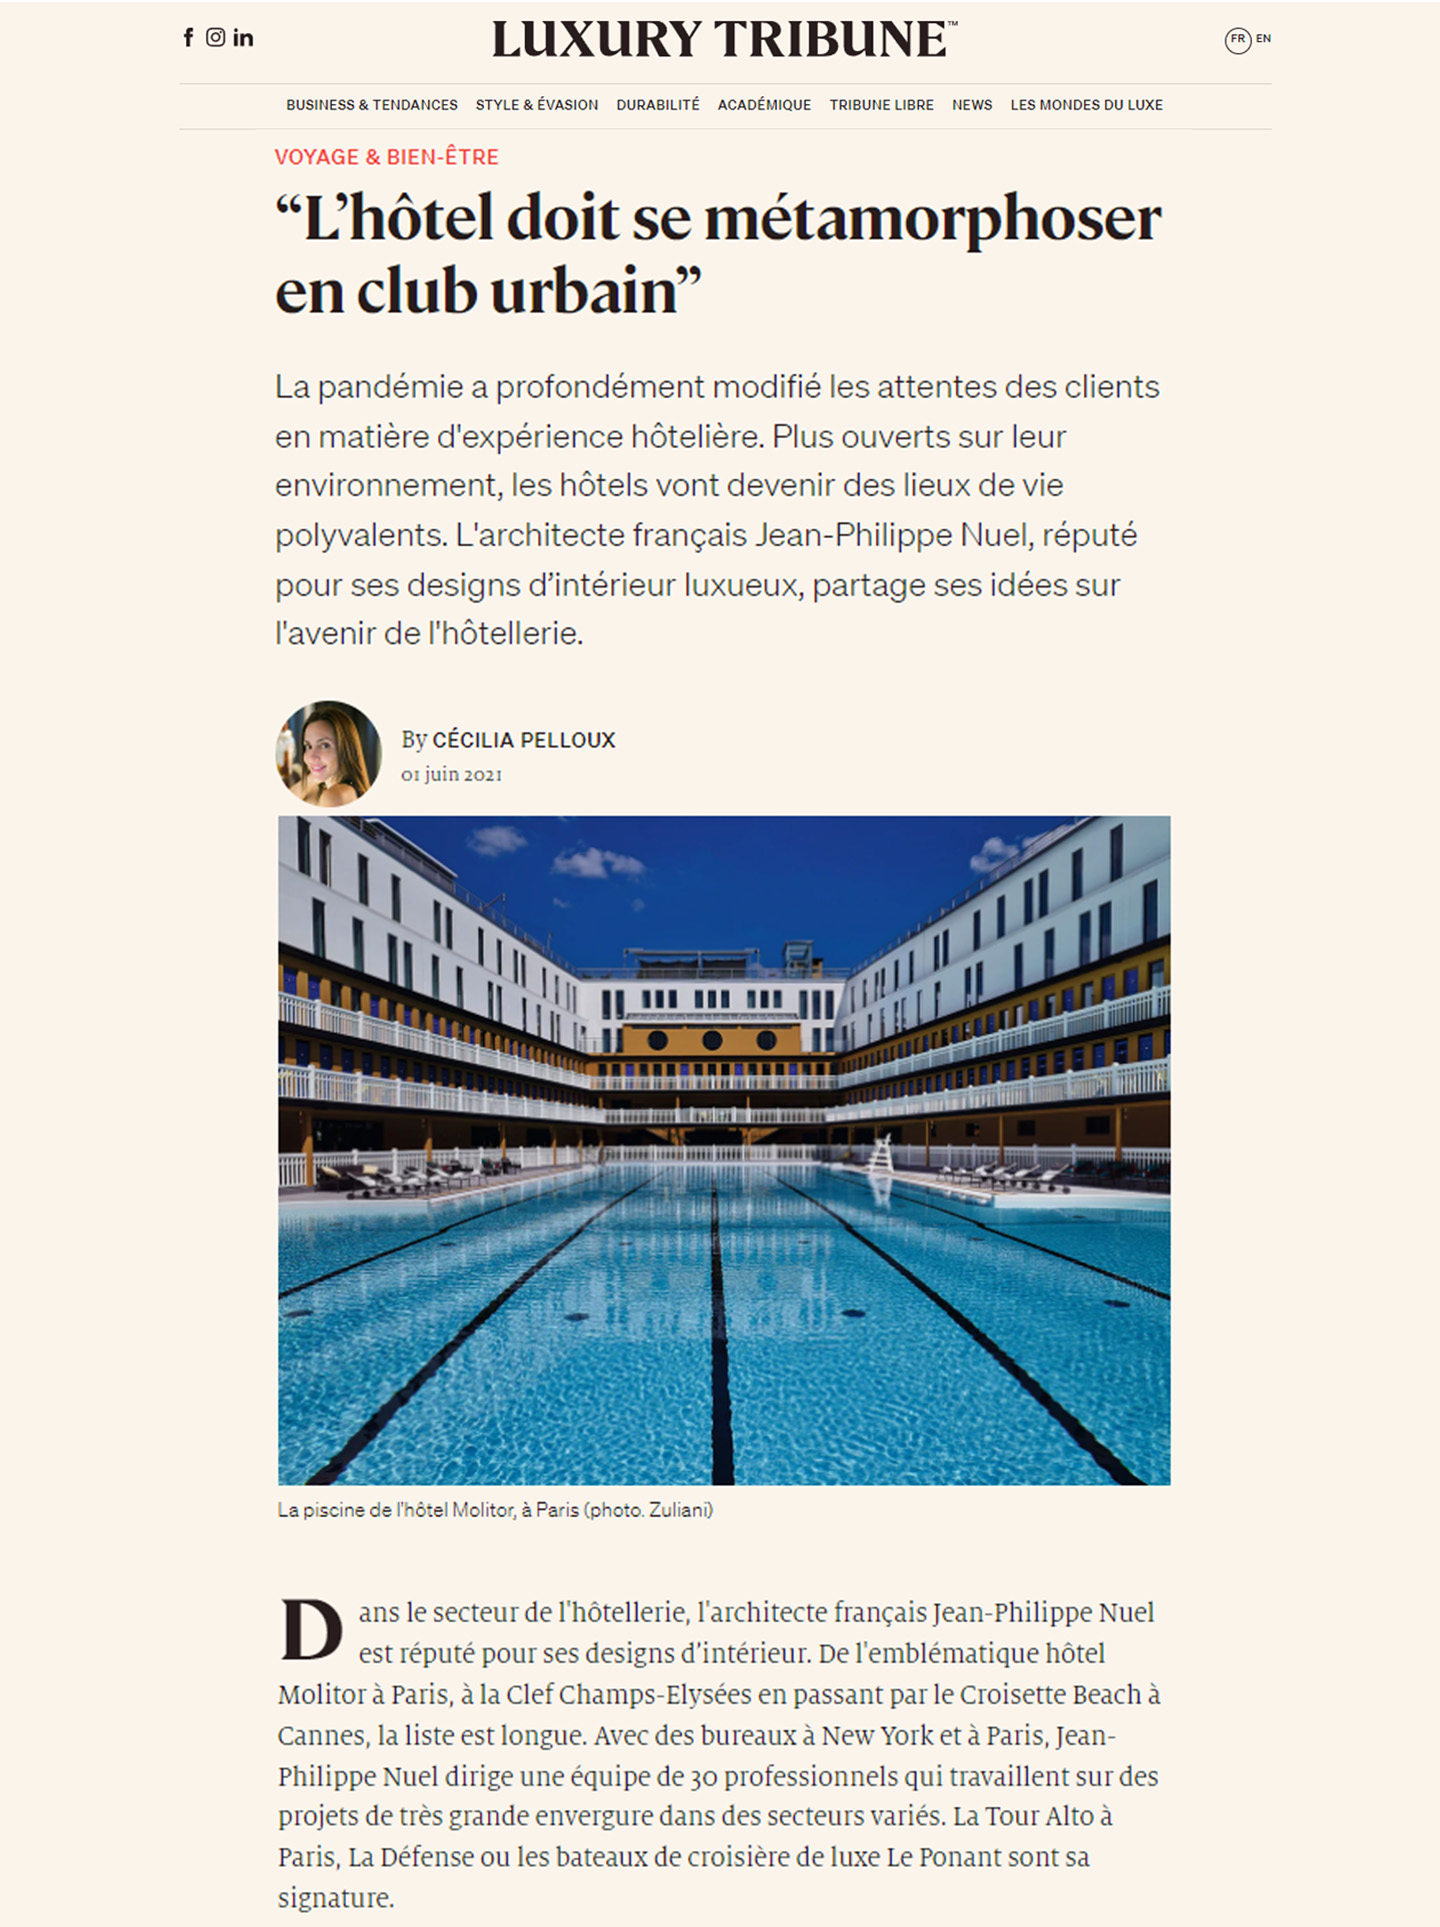 Article dans Luxury tribune sur le studio jean-philippe nuel et le futur de l'hotellerie, de l'architecture d'intérieur dans l'hotellerie de luxe